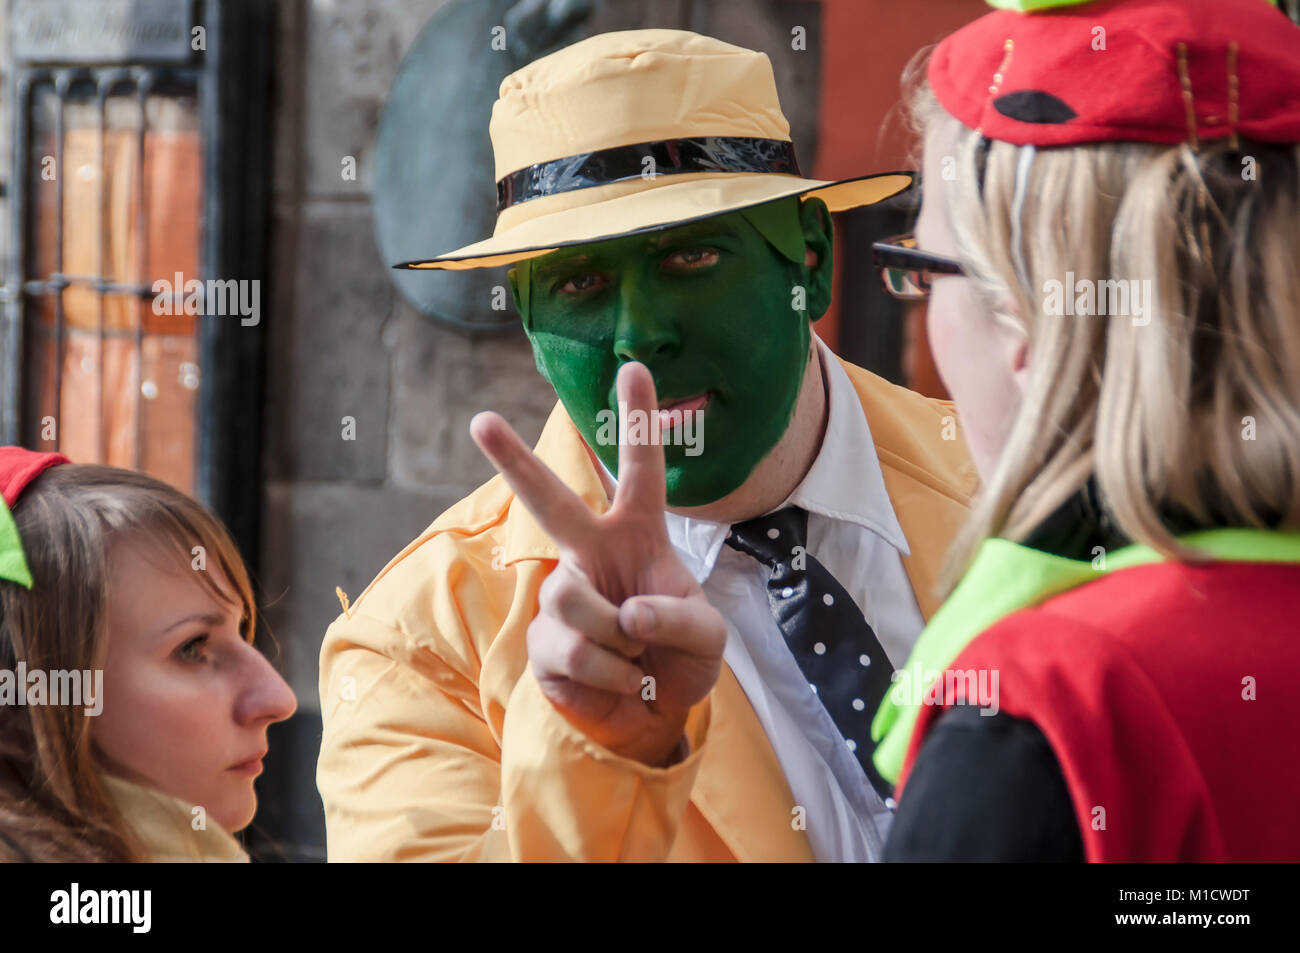 Köln, Deutschland - 14. März 2014: Ein Mann trägt das Kostüm aus dem Film "Die Maske", einem gelben Anzug mit einem gelben Hut und grüne Fläche Stockfoto